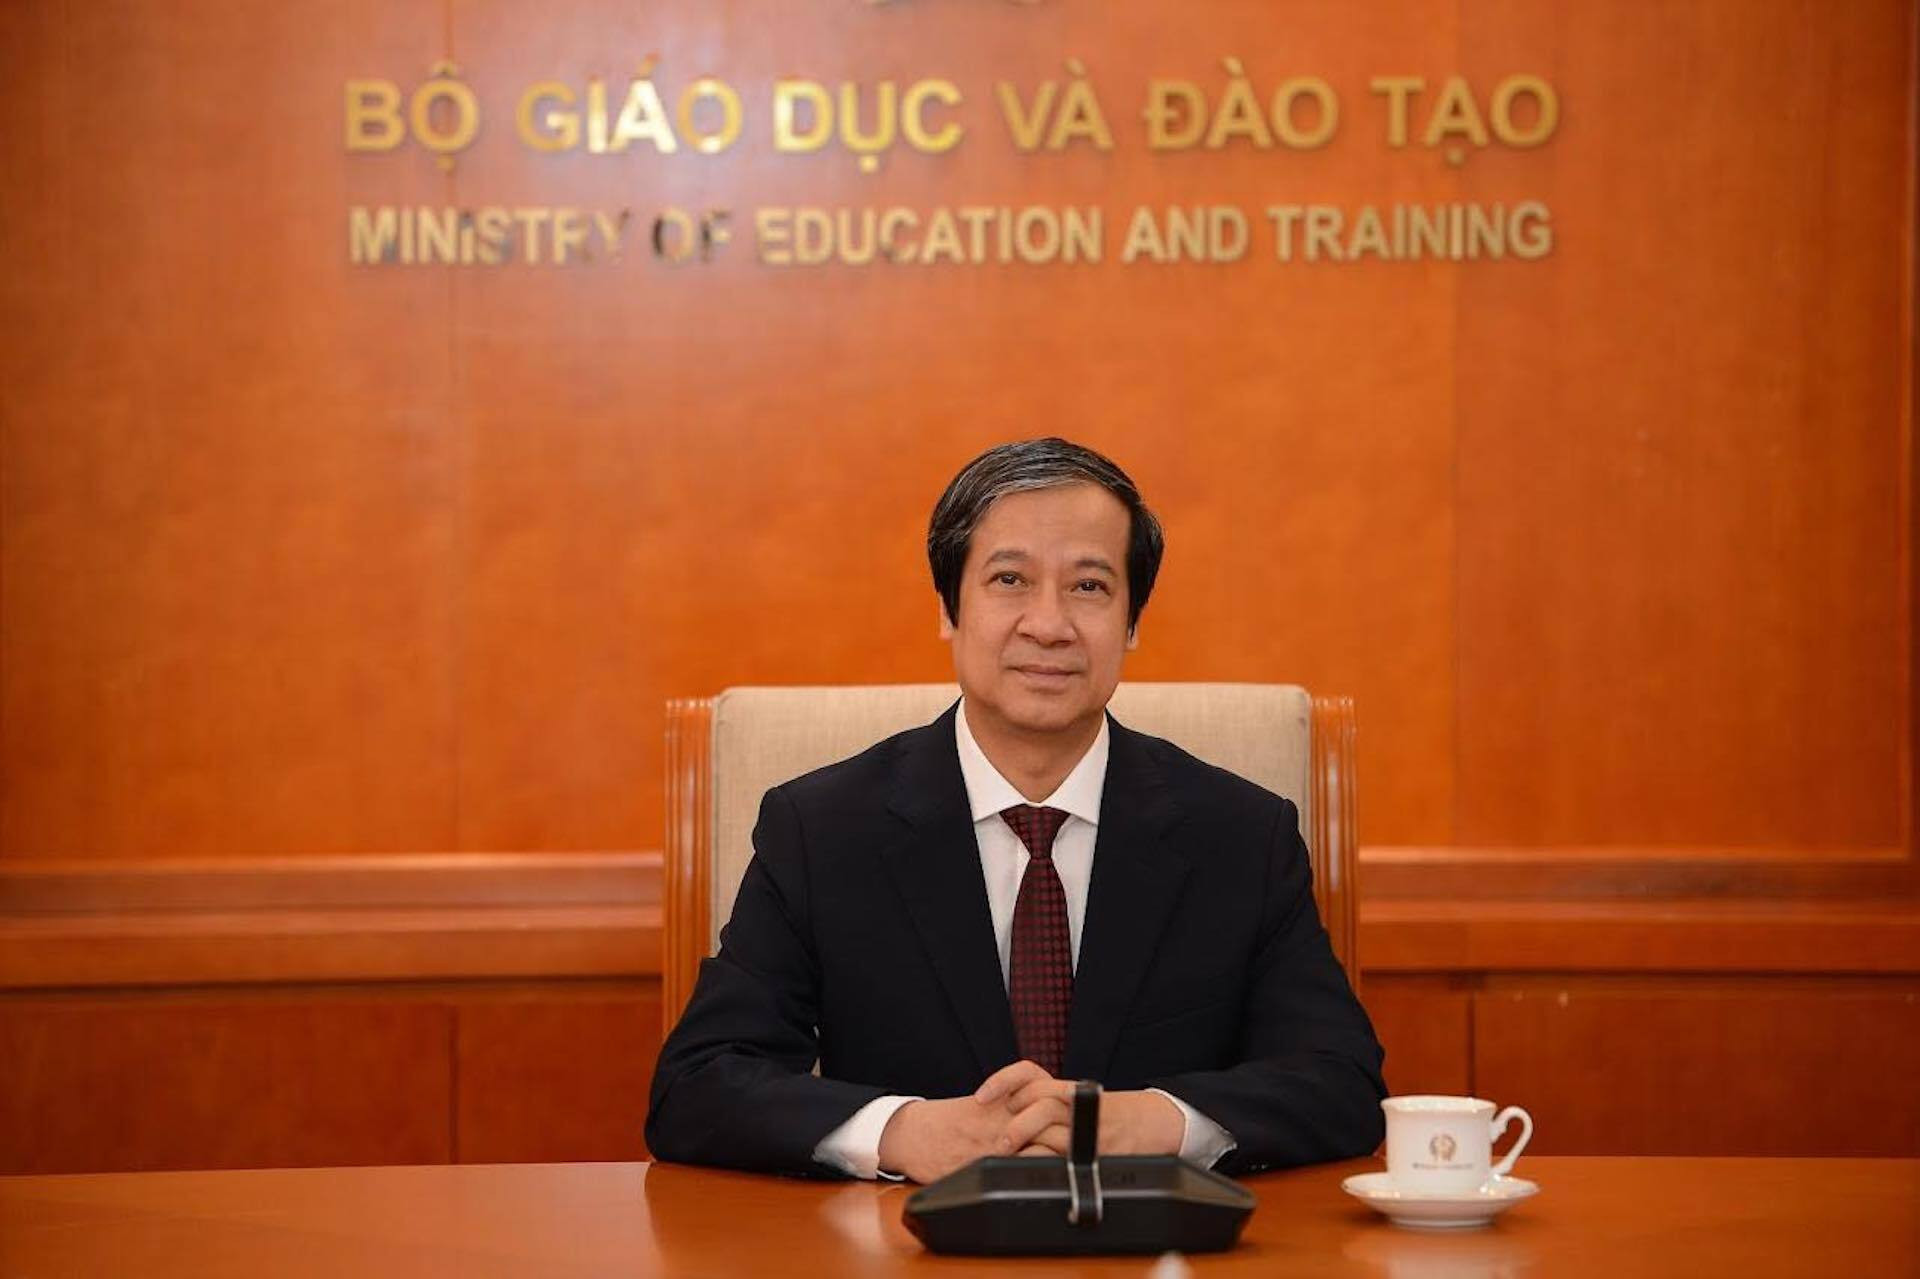 Bộ trưởng GD&ĐT Nguyễn Kim Sơn: Tinh thần thực chất đang lan tỏa  - 1